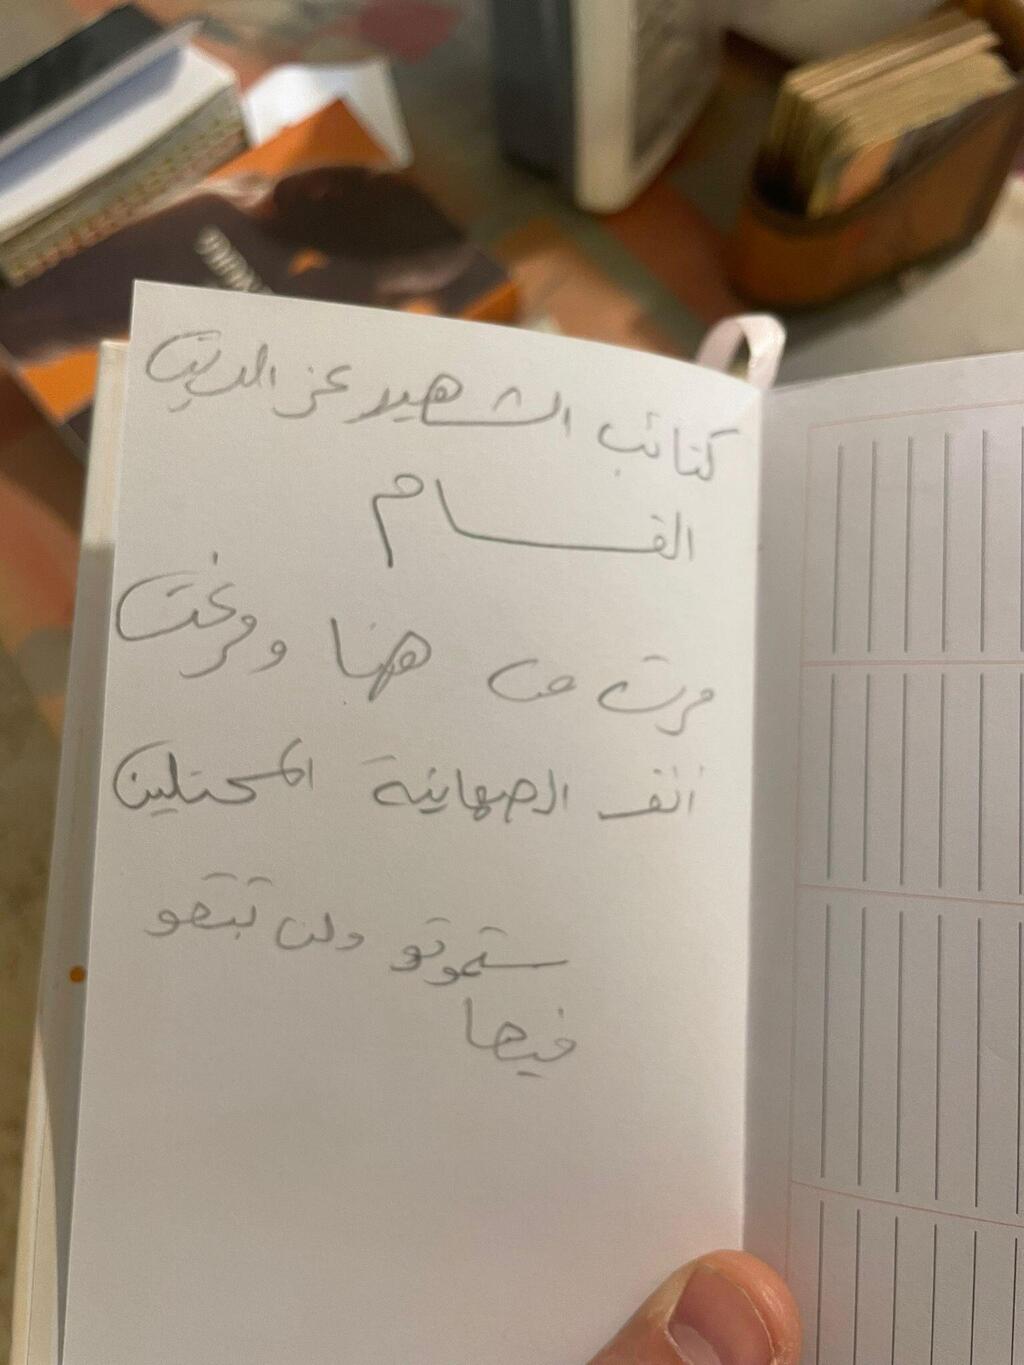 מכתב שהושאר על ידי מחבלי חמאס בחדירה לכפר עזה בשבעה באוקטובר